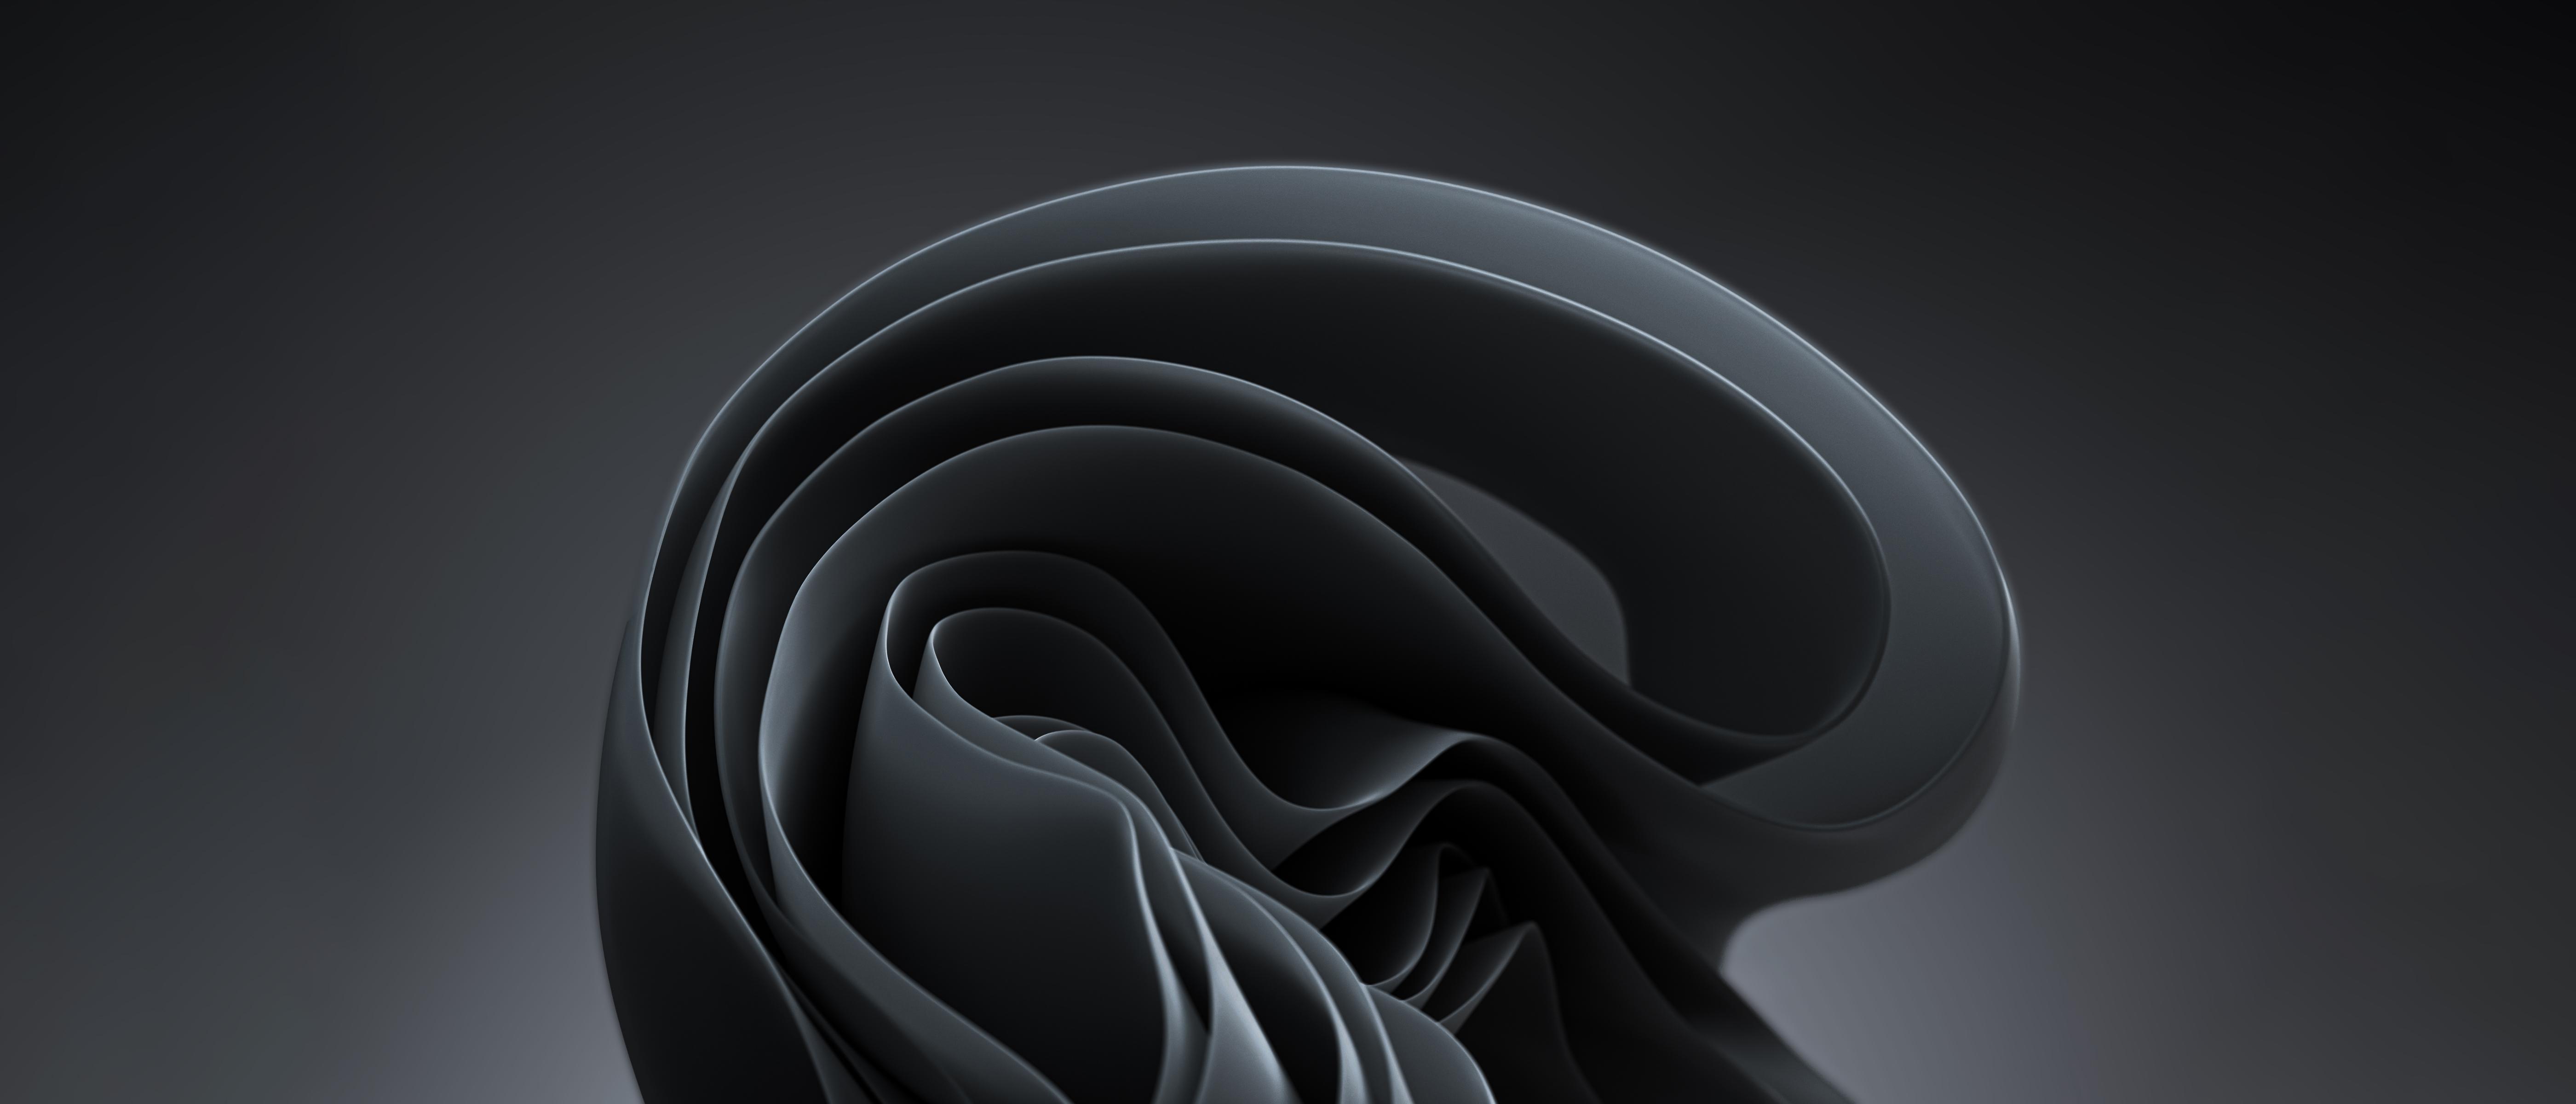 HÌnh nền màu đen, nền đen cho chế độ dark mode đẹp nhất cho máy tính |  VFO.VN